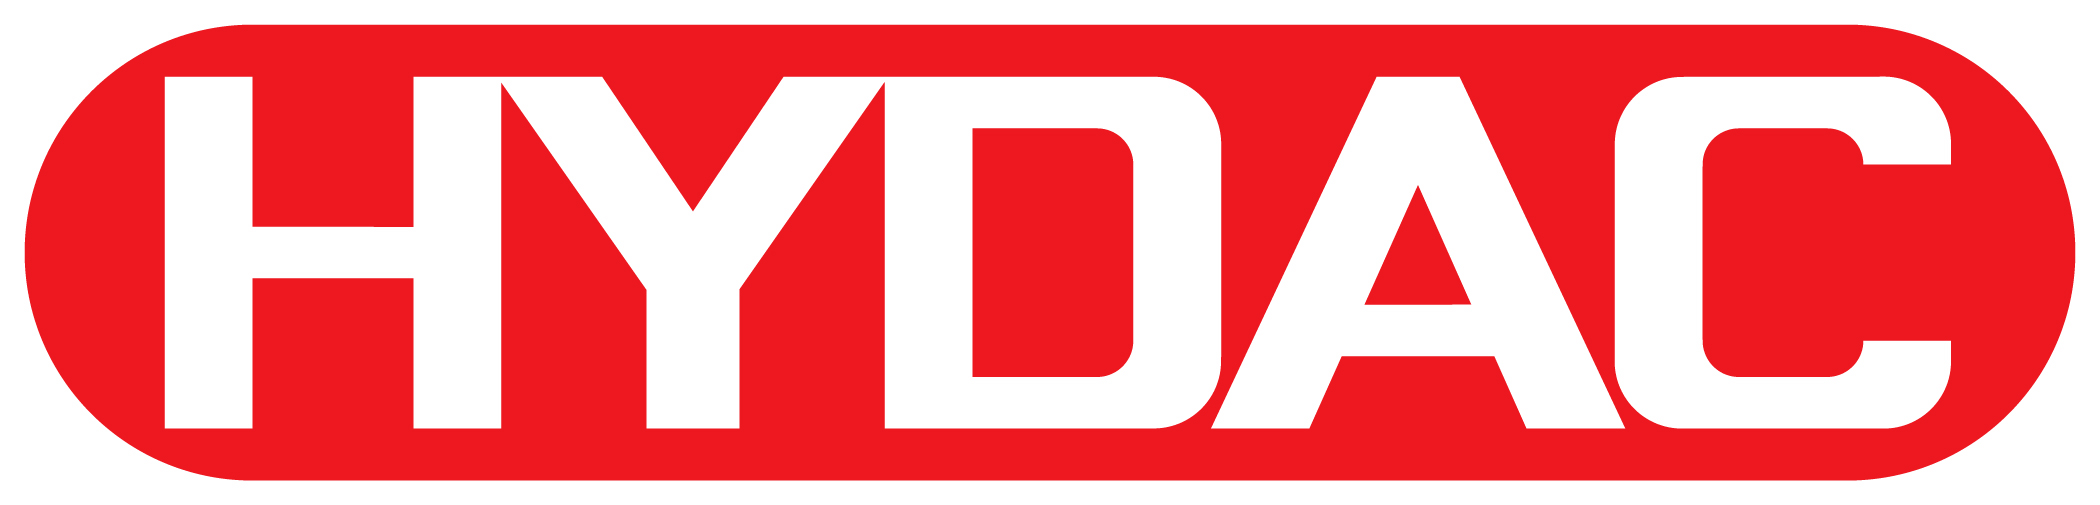 Hydac Technology Corporation